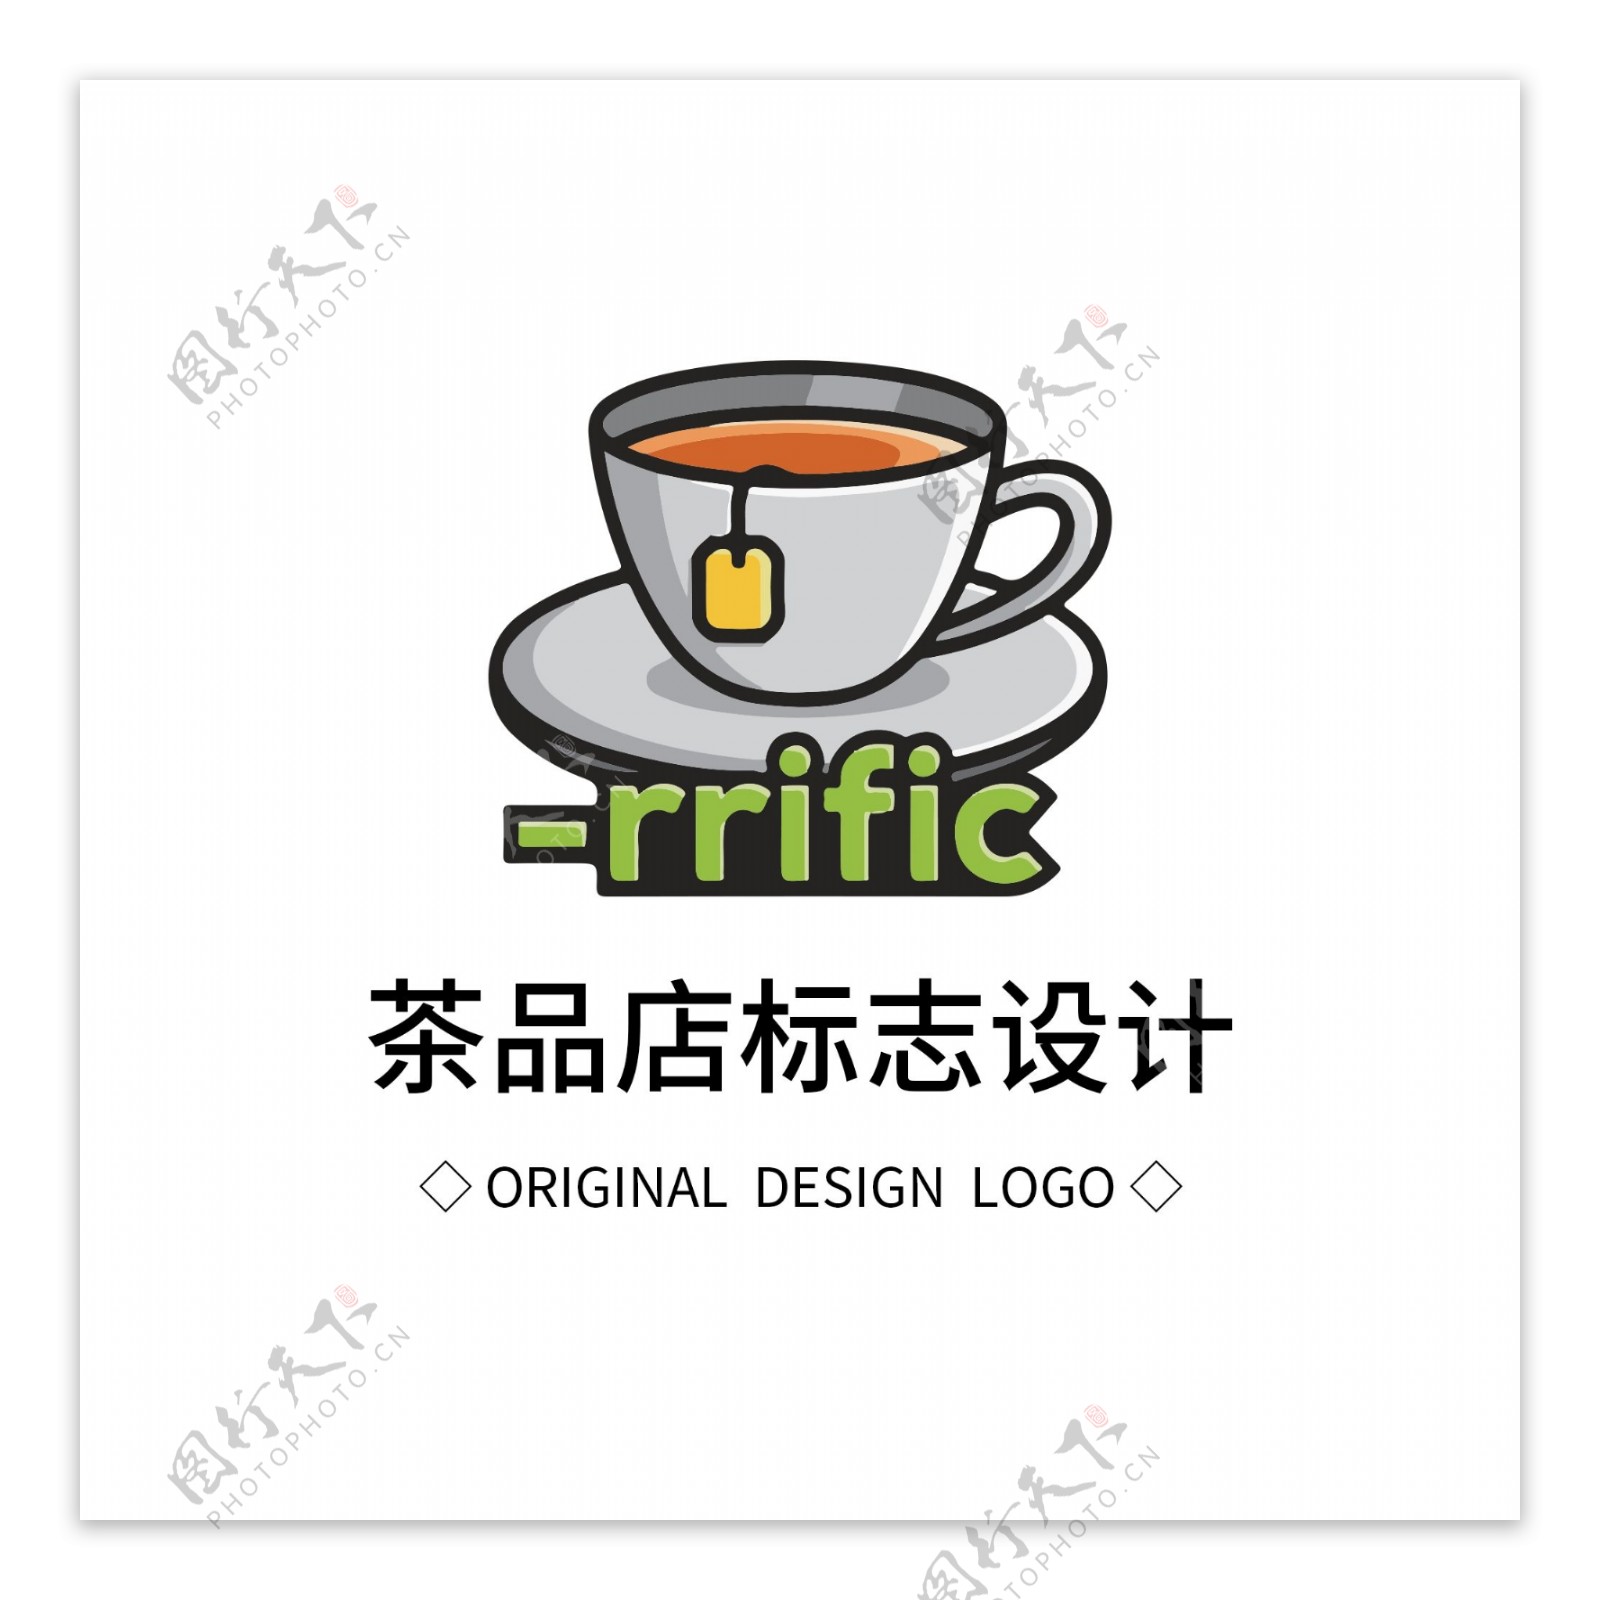 原创茶品店标志设计